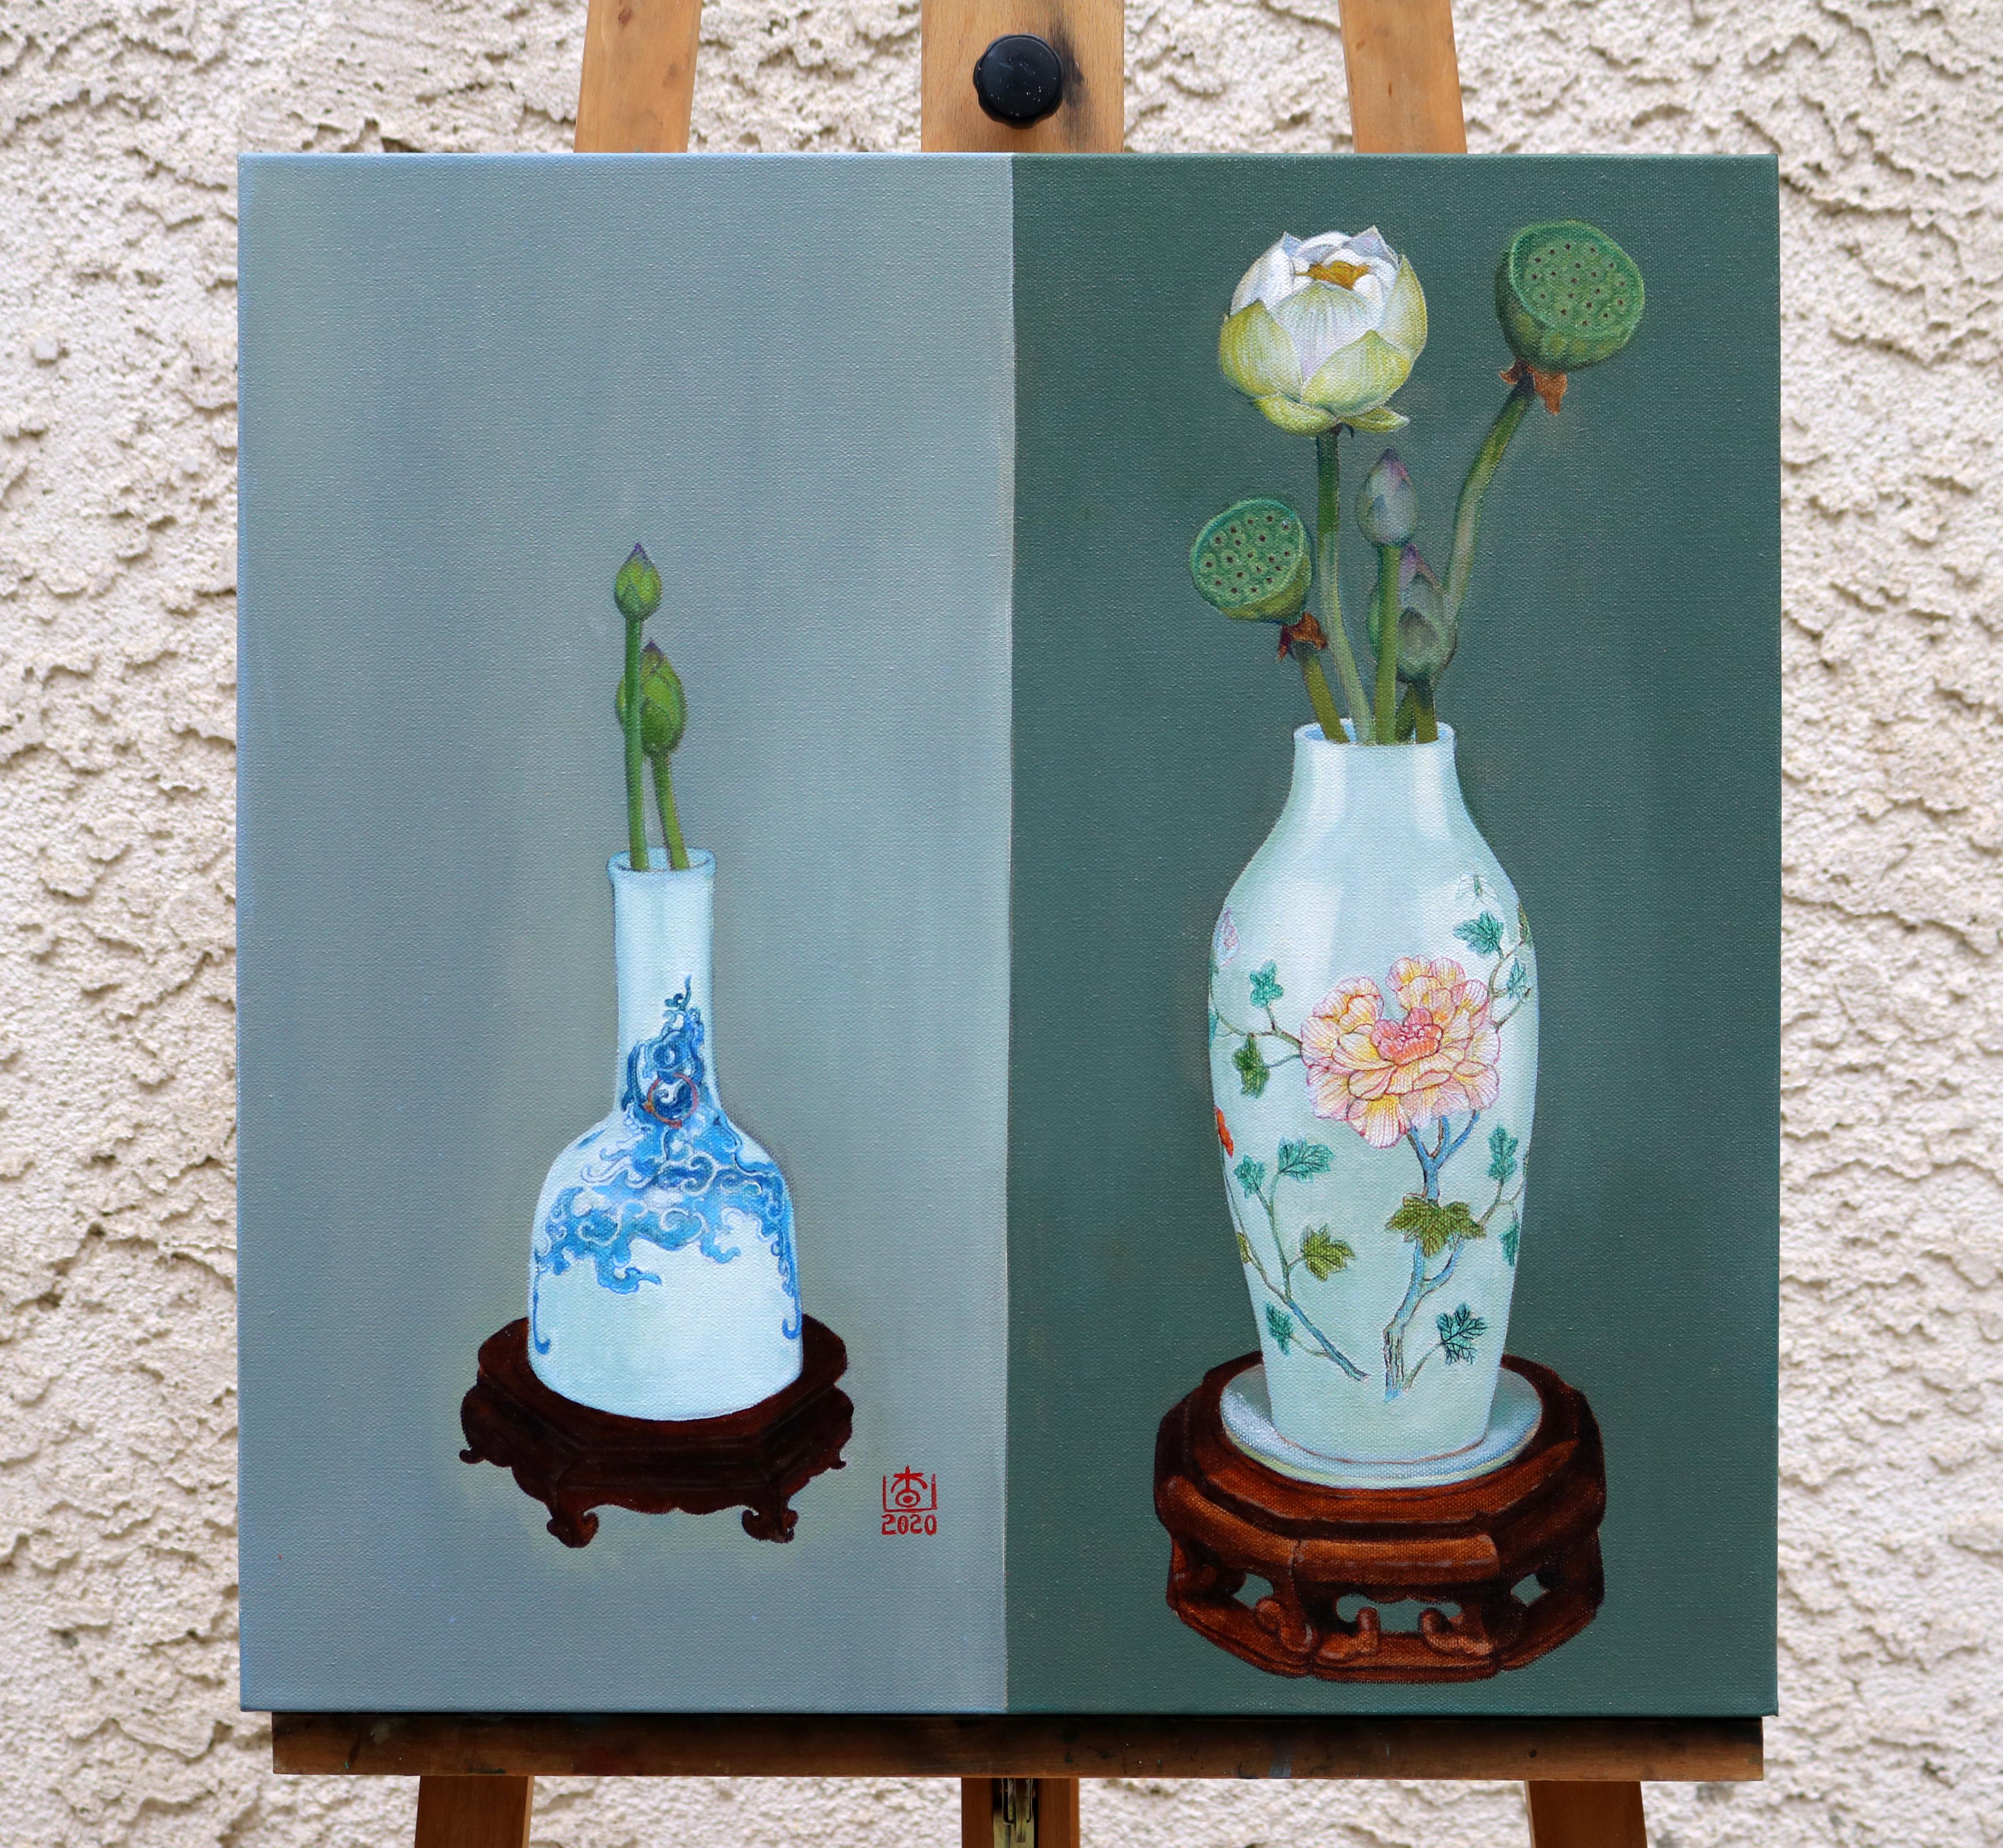 <p>Kommentare der Künstlerin<br>Die Künstlerin Guigen Zha malt ein realistisches Stillleben mit Lotusblumen in verschiedenen Entwicklungsstadien. Er stützt sie auf chinesische Keramikvasen vor einem Hintergrund aus zwei verschiedenen Farbtönen. Im